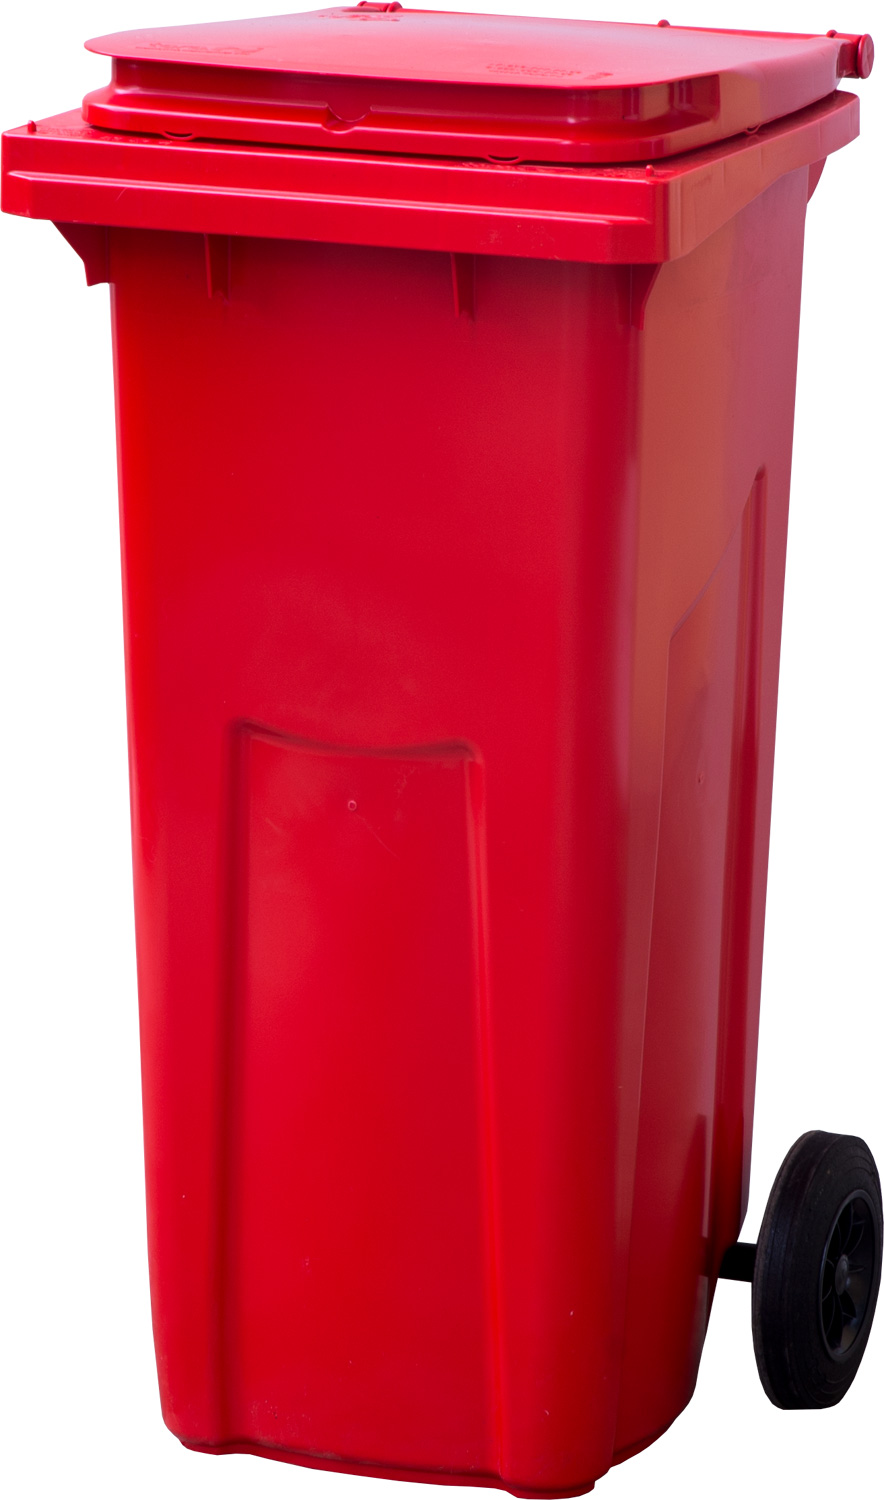 Мусорный контейнер МКТ 120 красный 550x480x960 мм Полиэтилен низкого давления (HDPE) 120 л